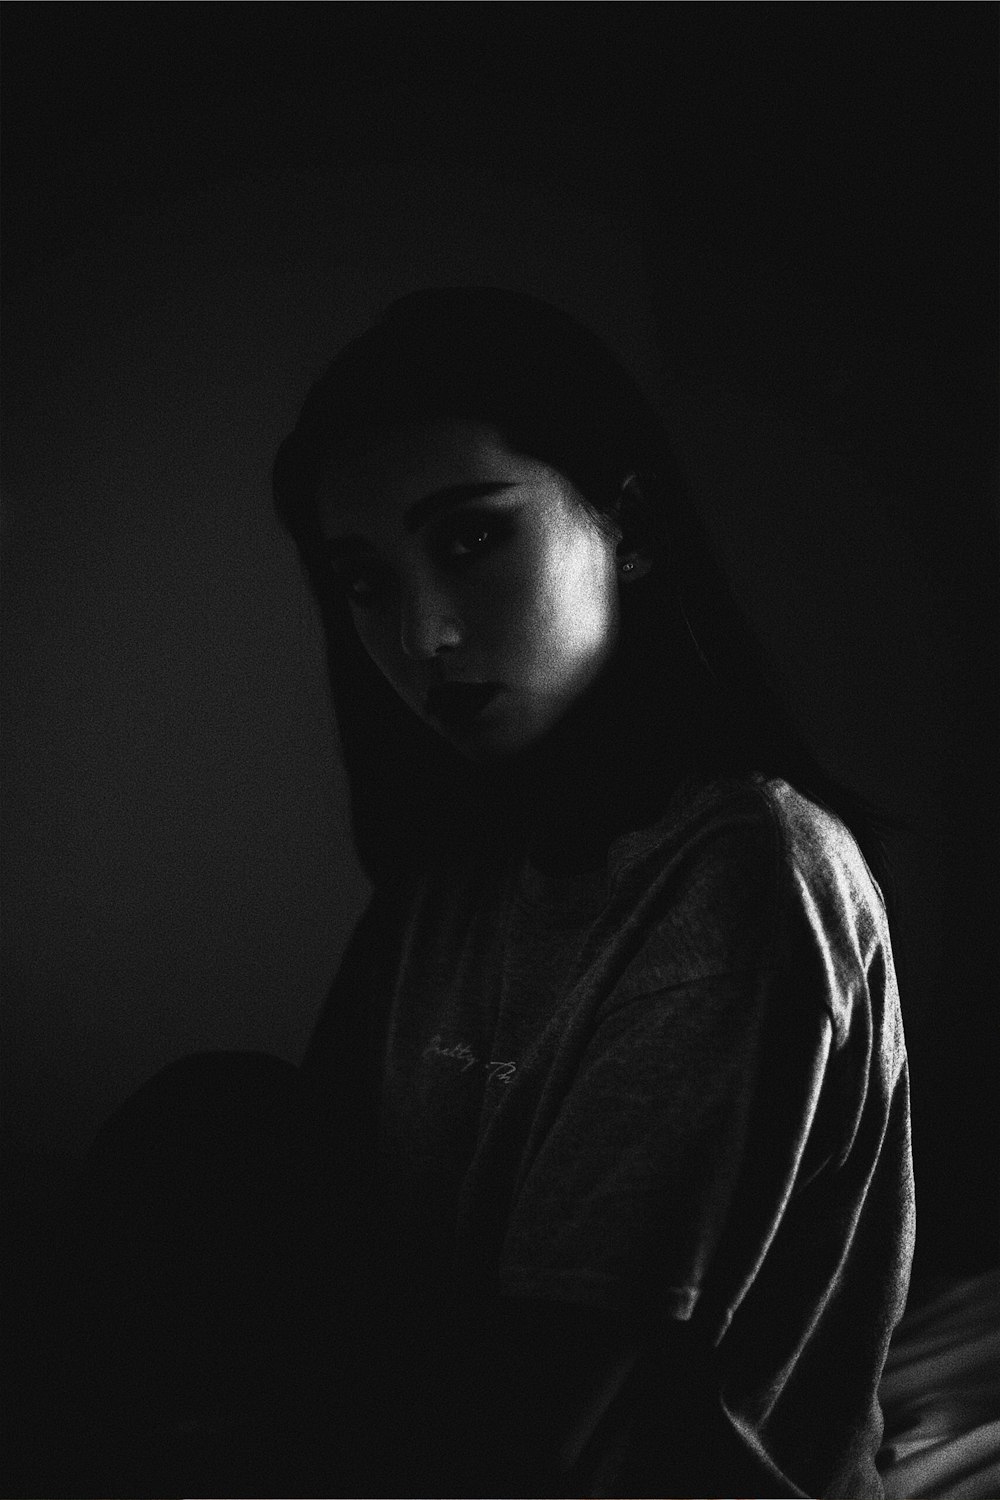 어두운 방 안에 있는 여자의 회색조 사진